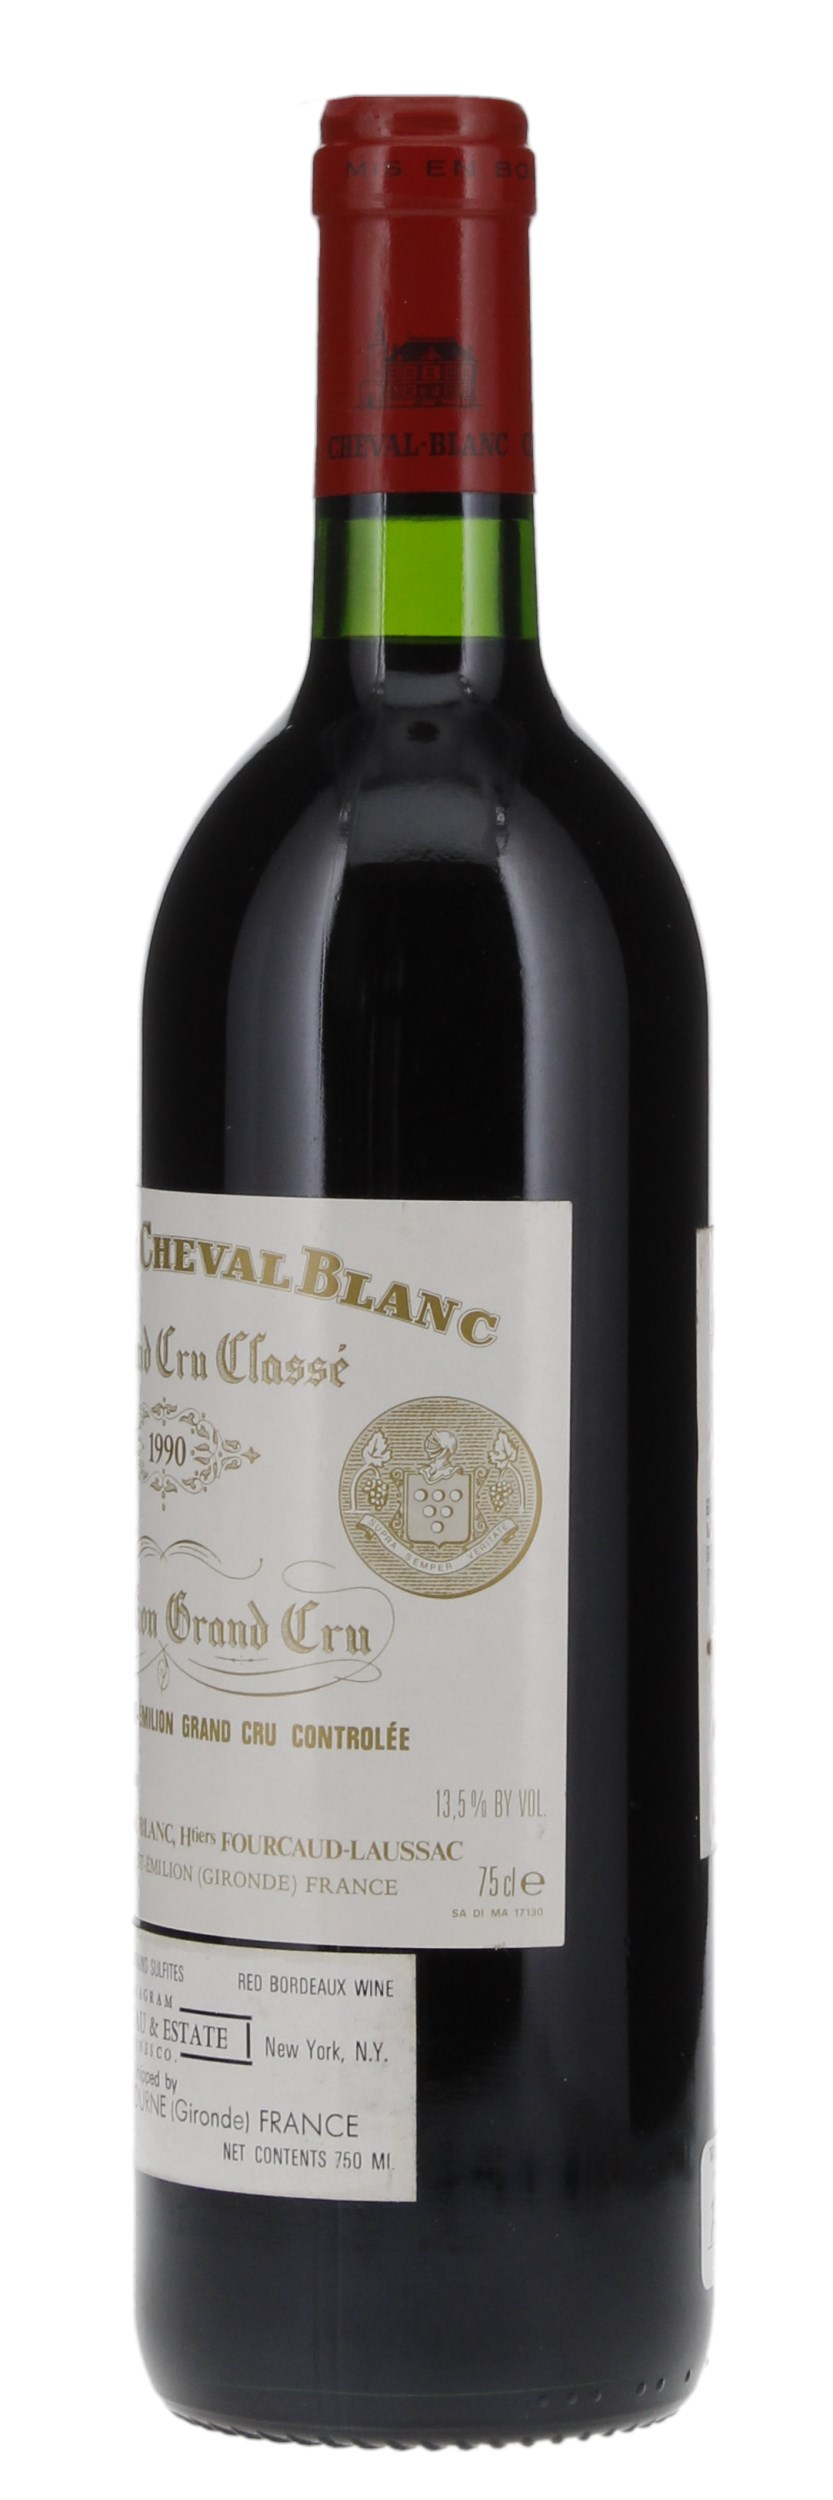 1990 Château Cheval-Blanc, 750ml